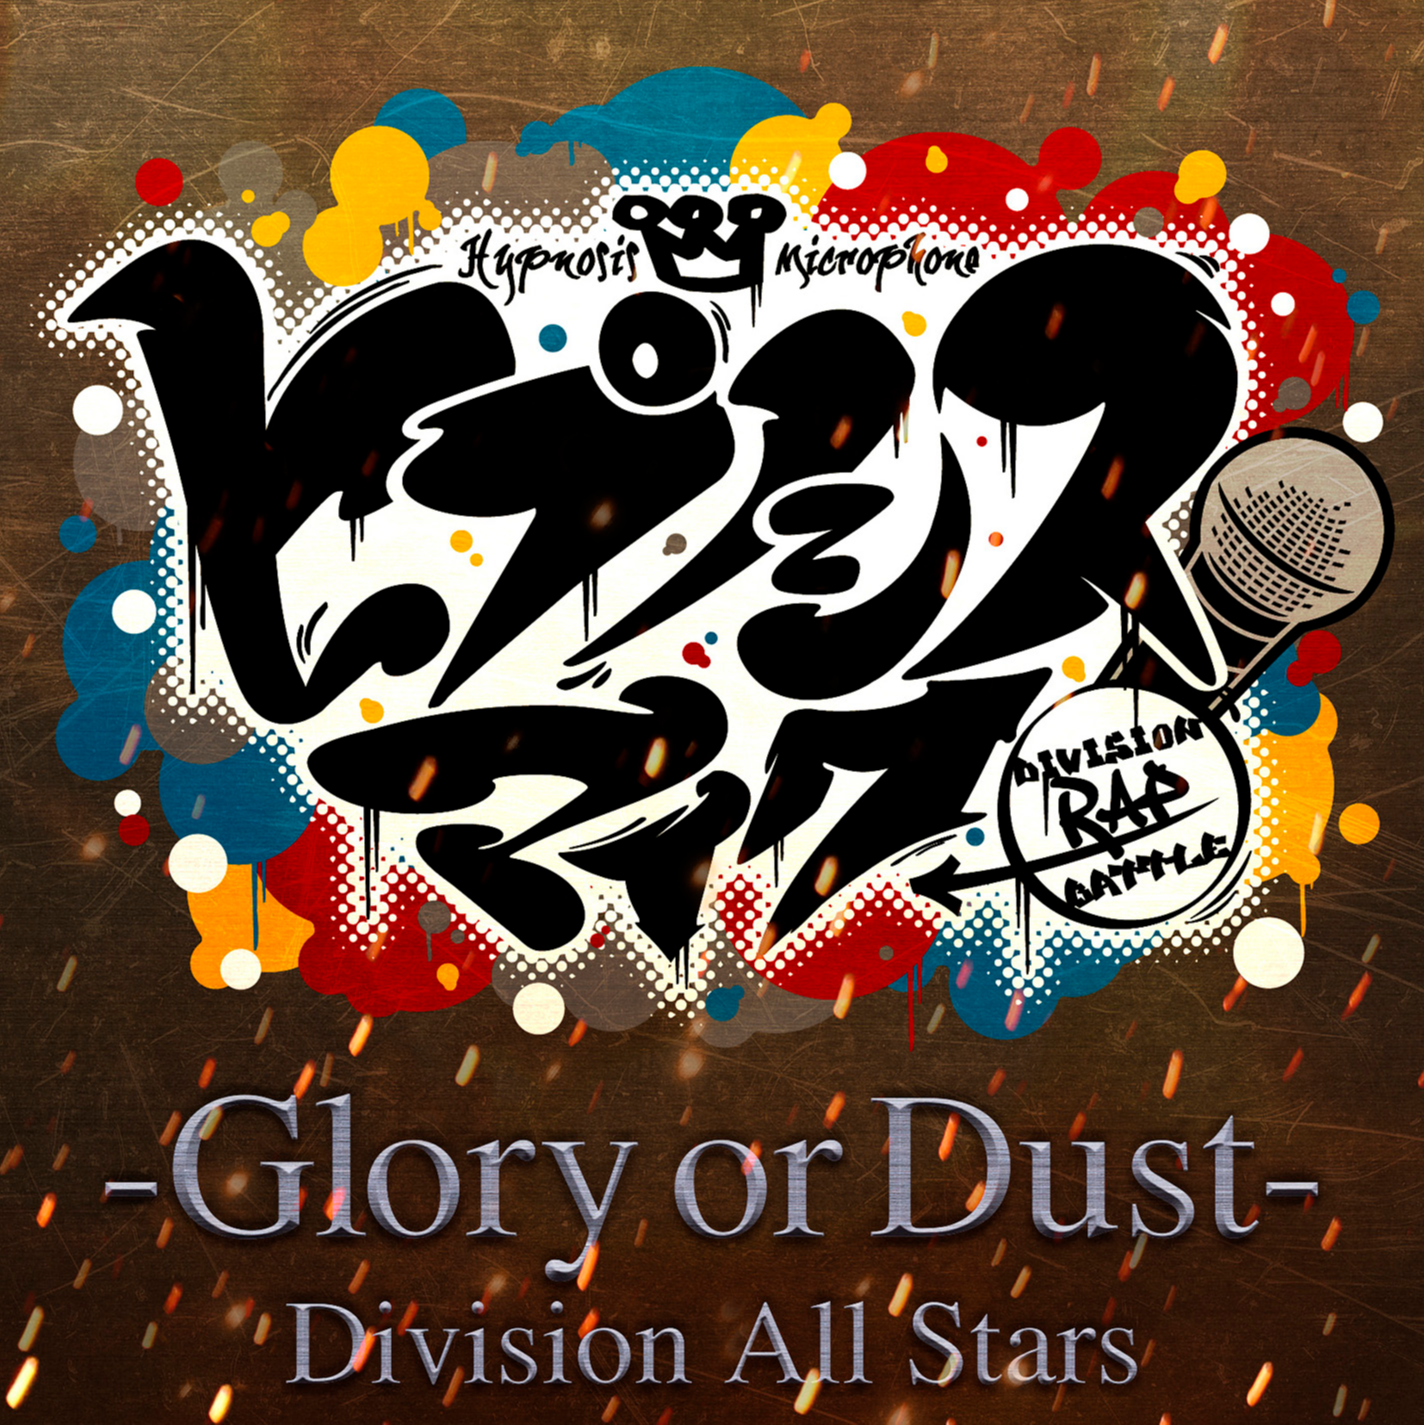 ヒプノシスマイク -Glory or Dust-专辑